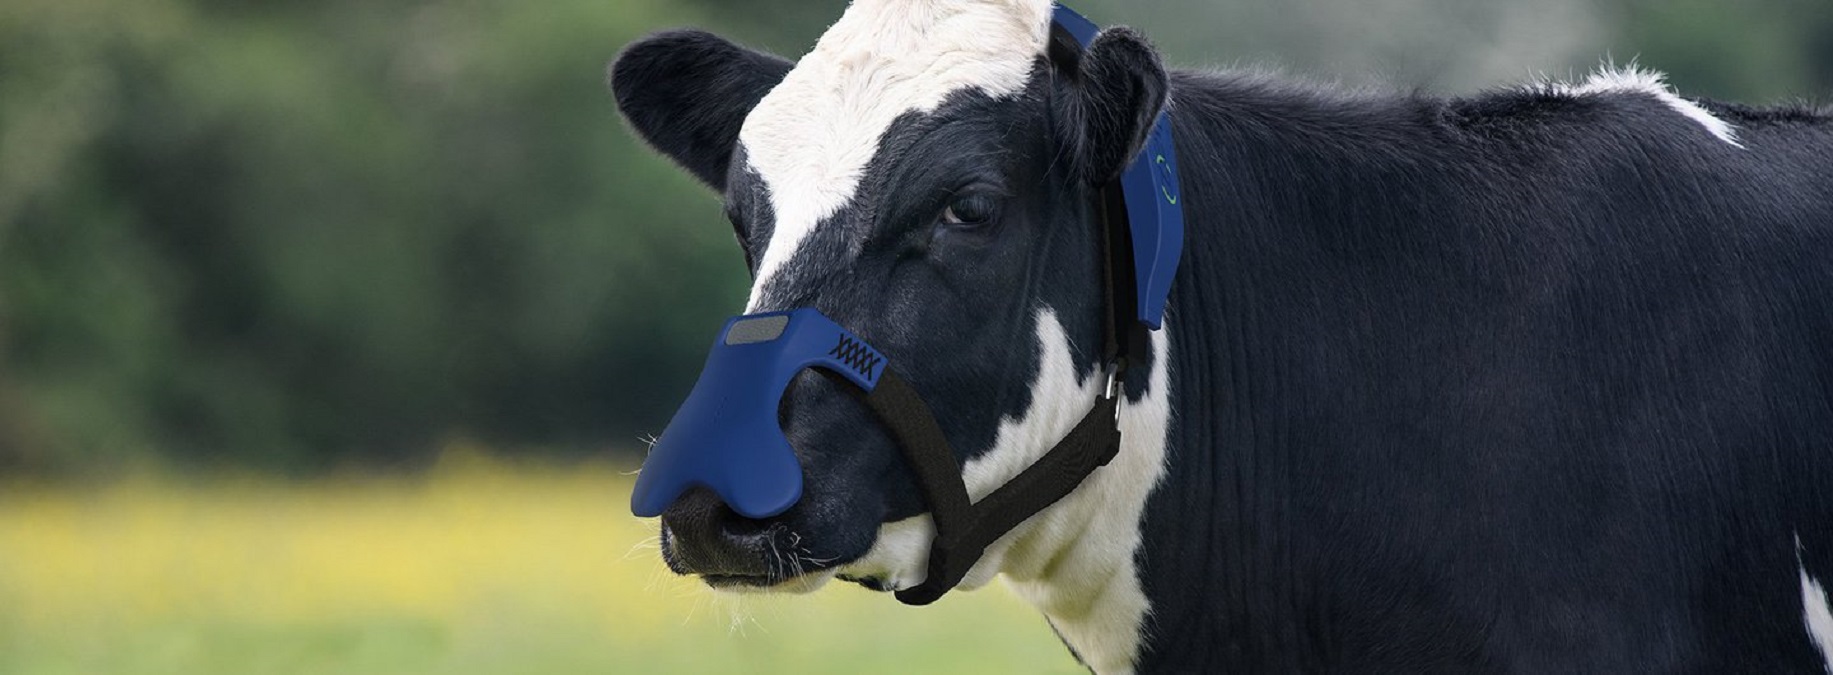 Emisja gazów cieplarnianych zmniejszy się dzięki… maskom dla krów?